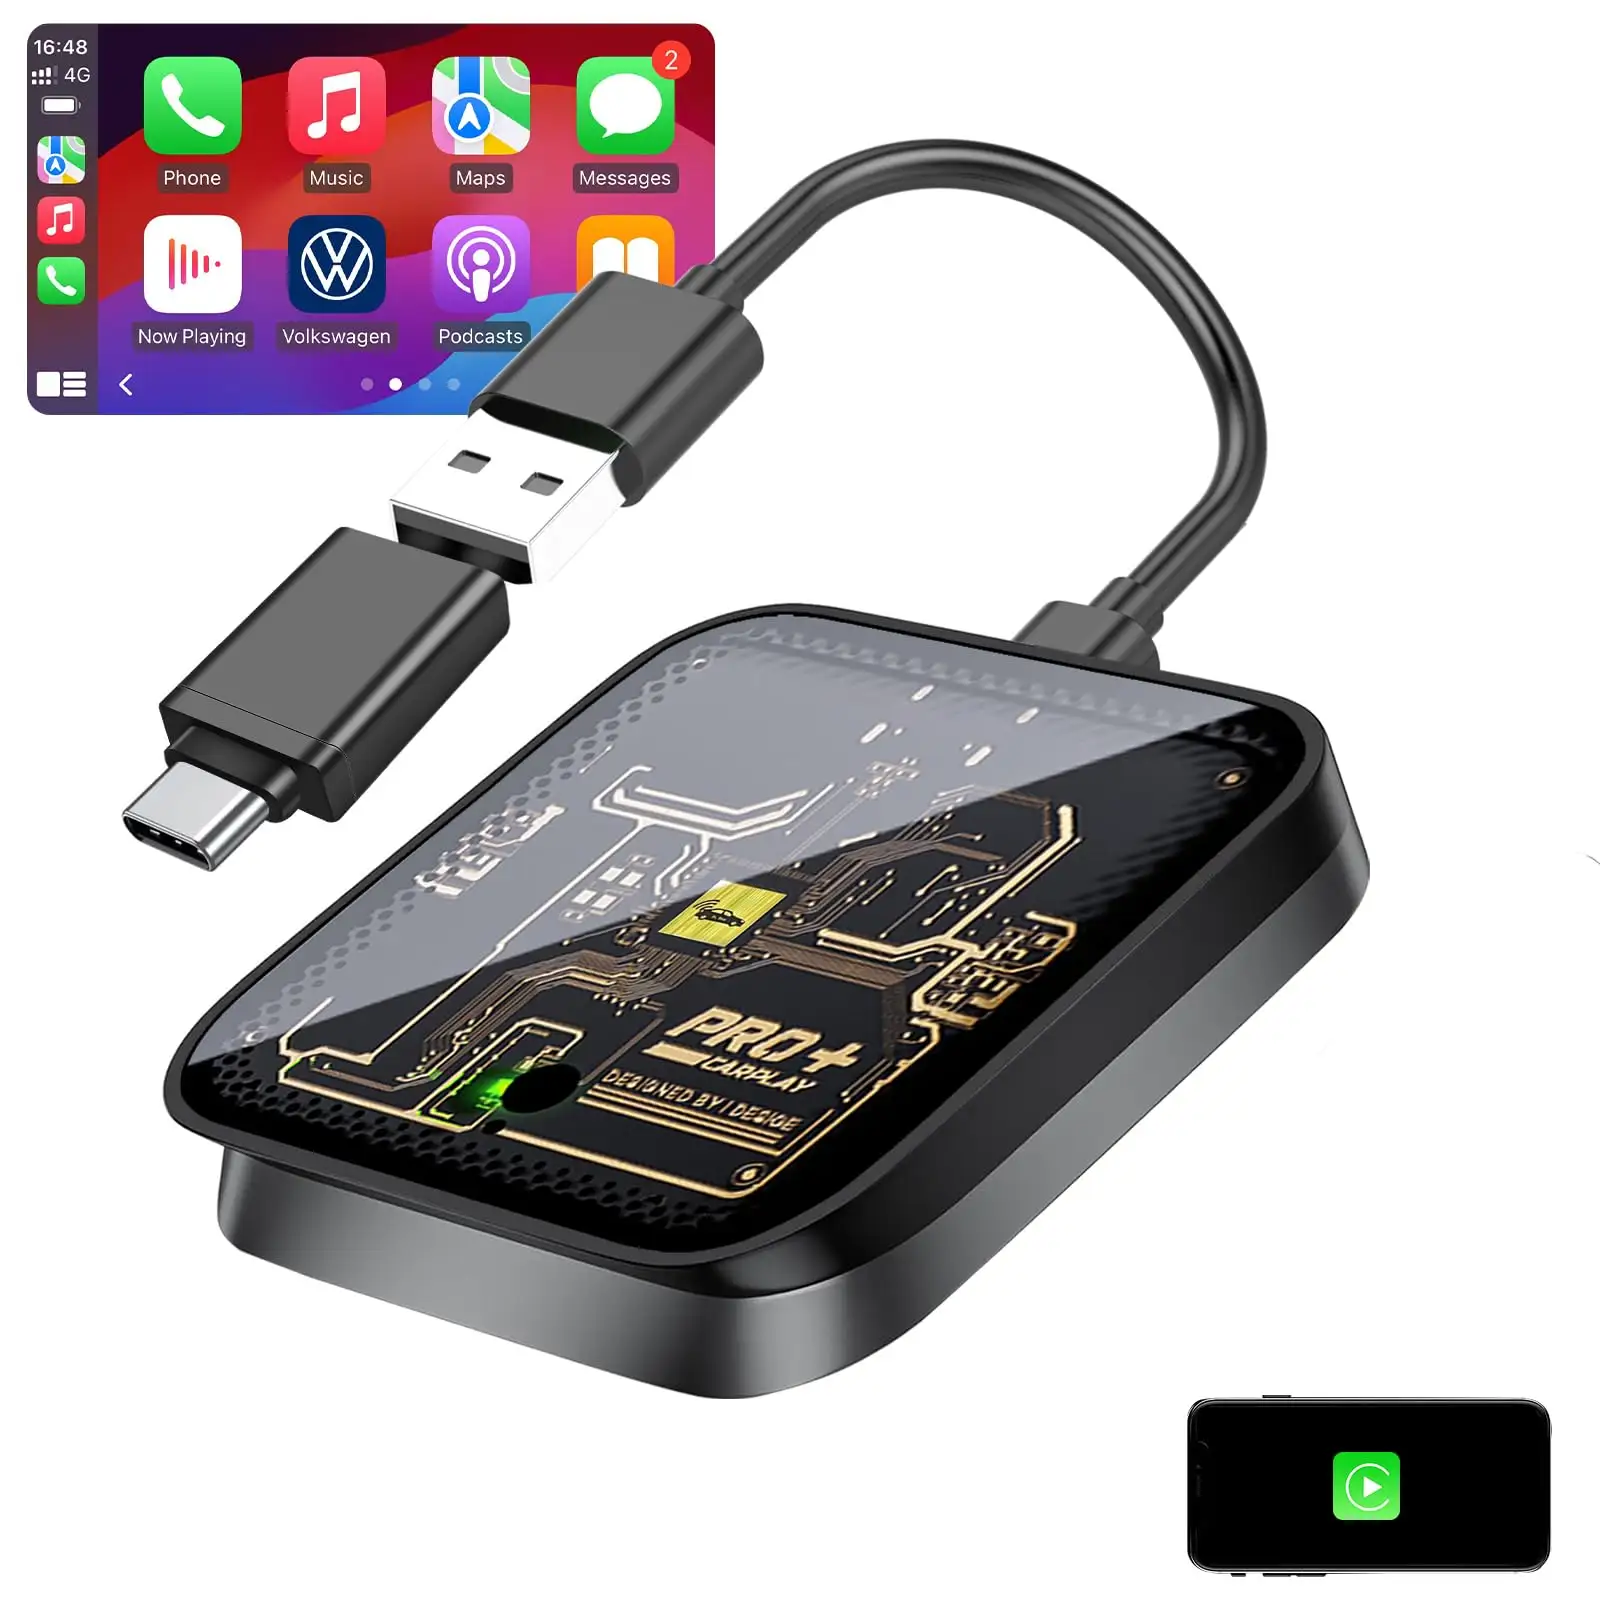 Phoebus Link portatile Carplay adattatore wireless catena di fornitura Android box per auto mini dispositivo carplay senza fili dongle